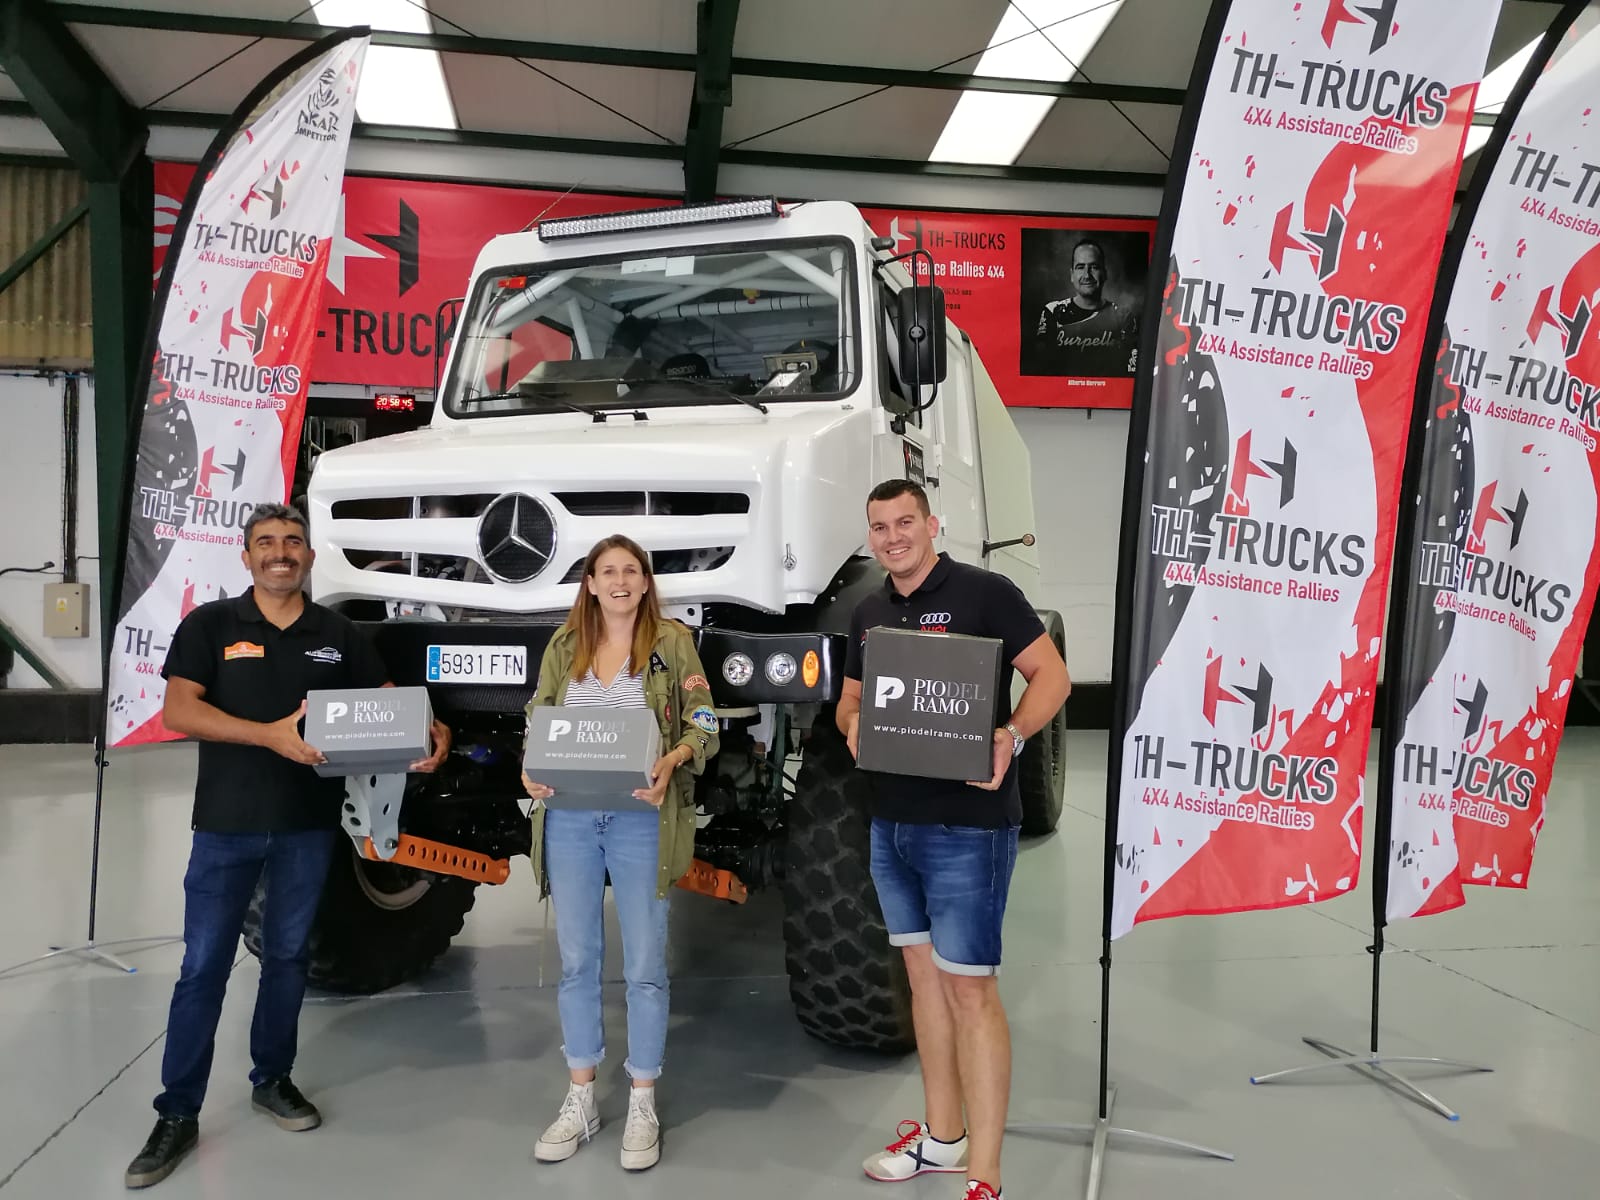 Antonio Tárraga volverá a participar en el rally Dakar 2022 formando parte de la escuadra Th – Trucks